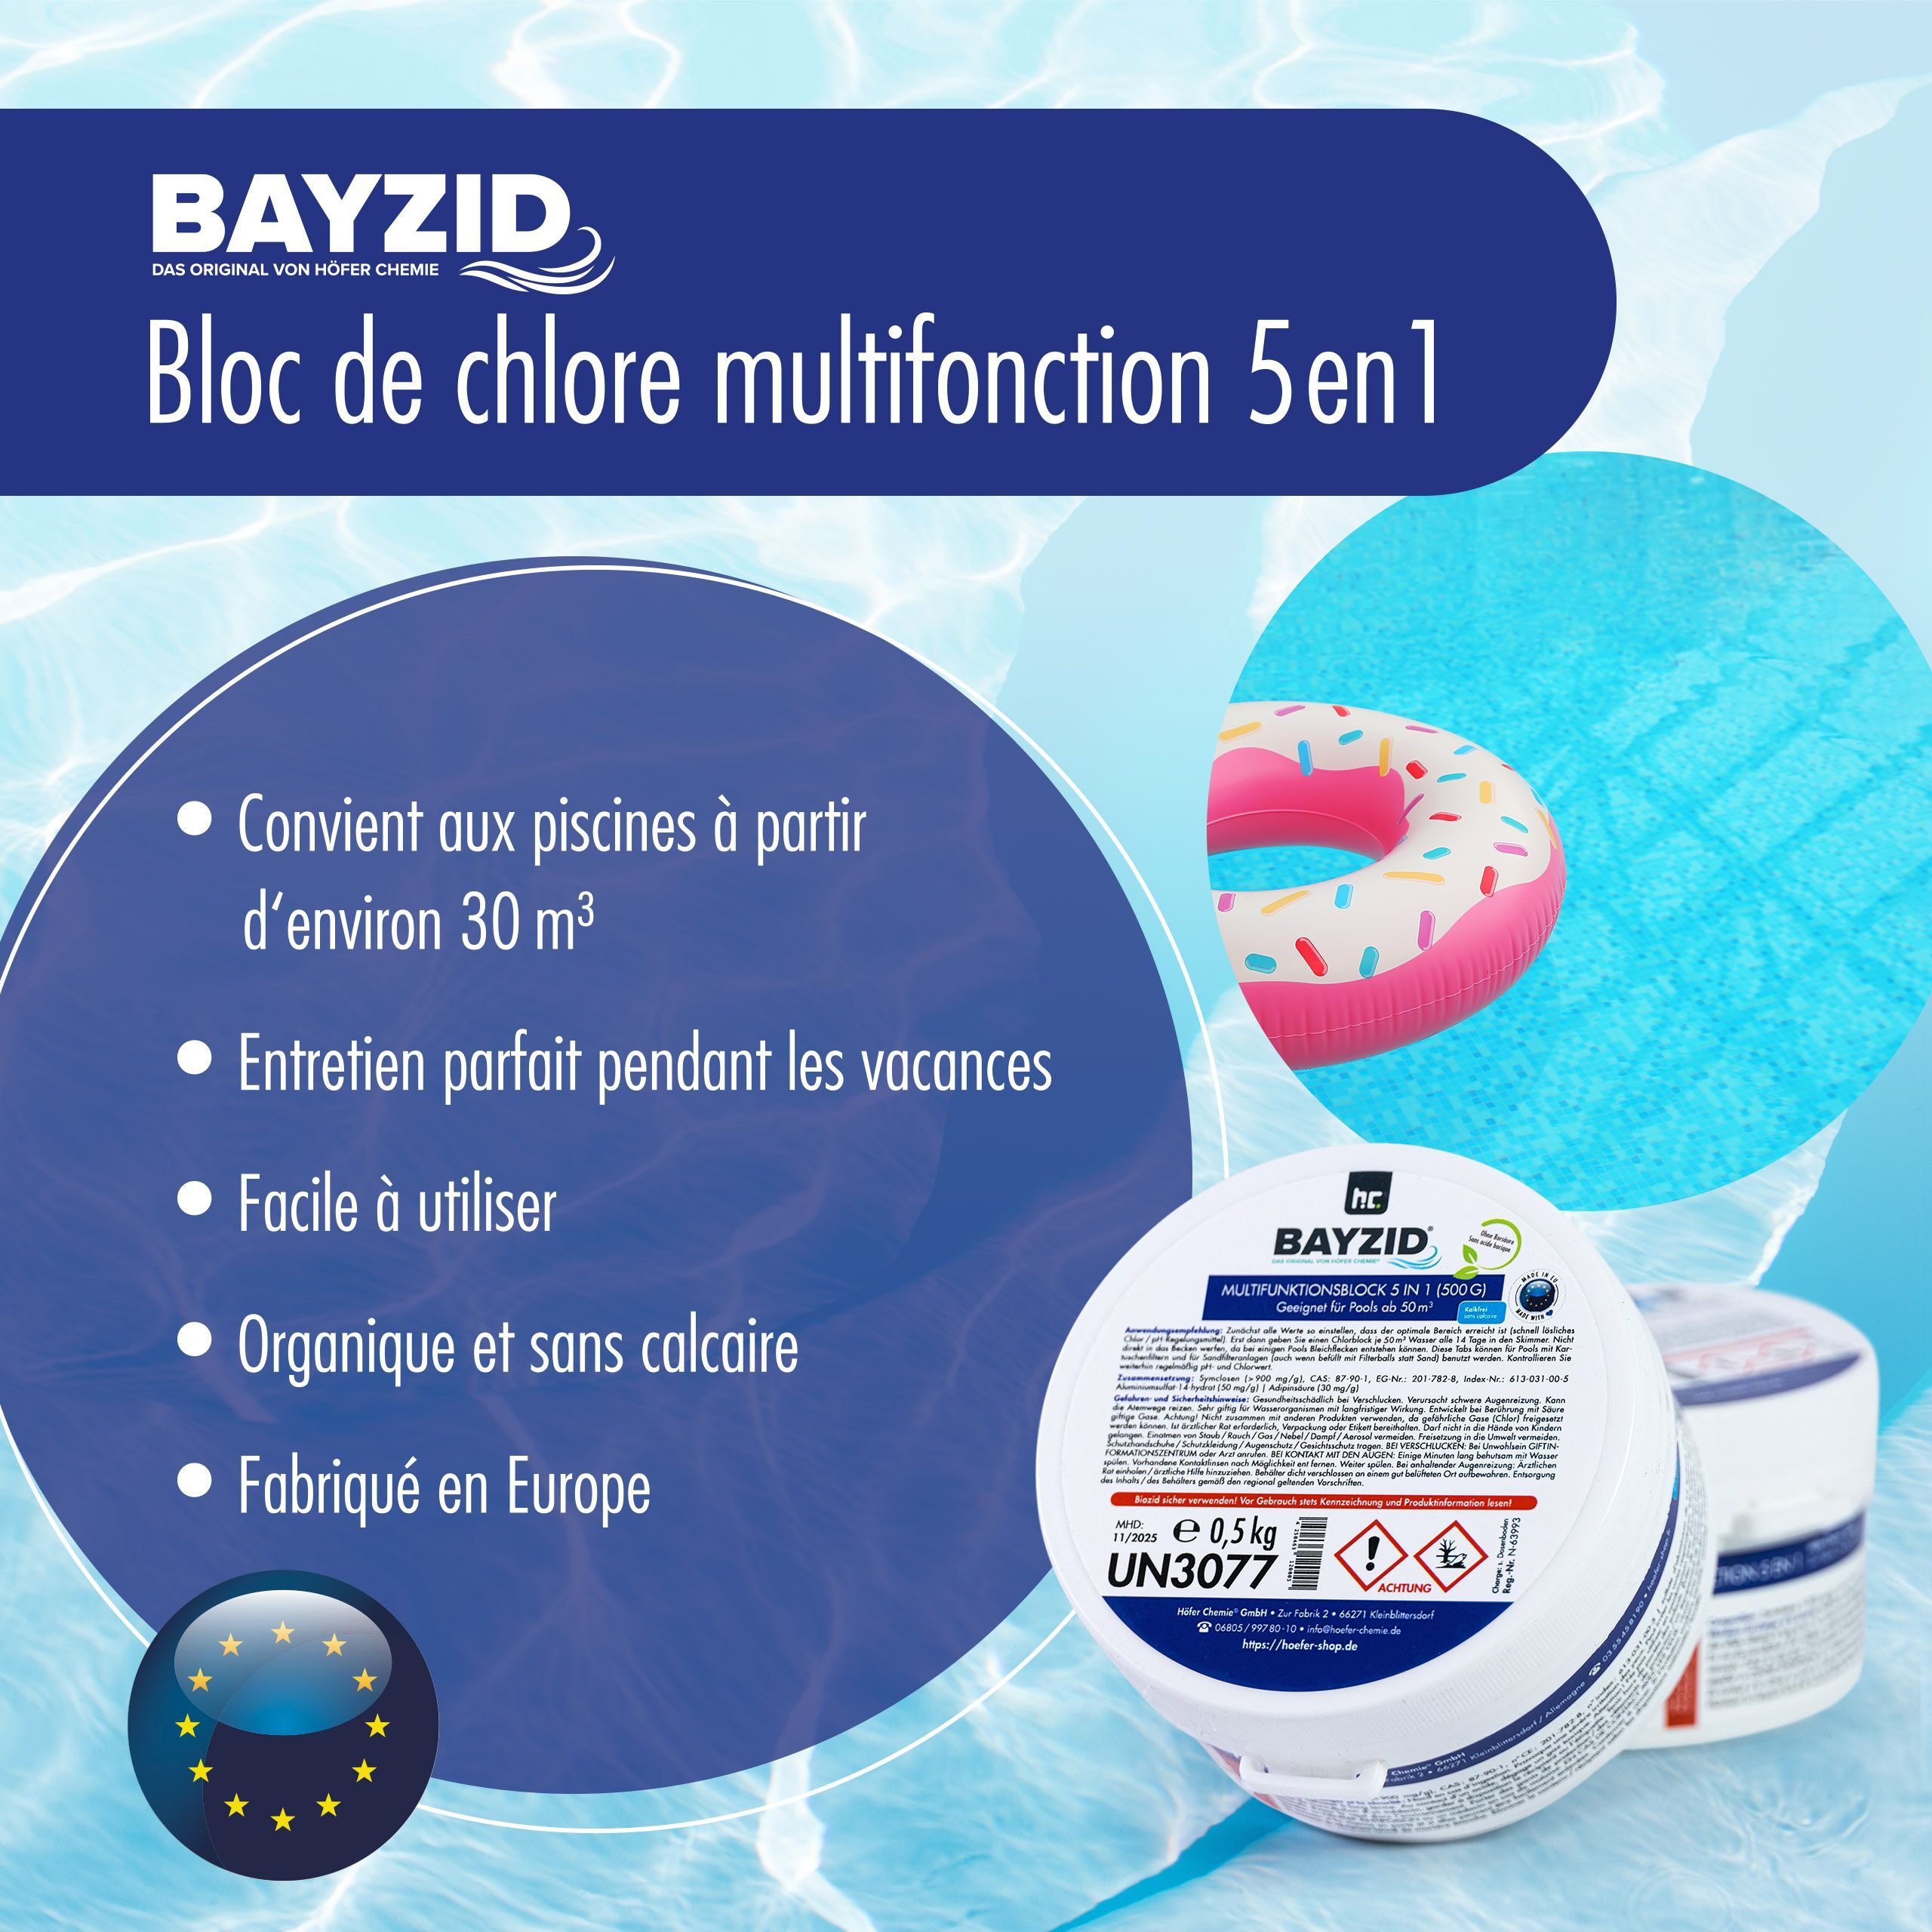 Bayzid® Chlore multifonction, bloc de 500g